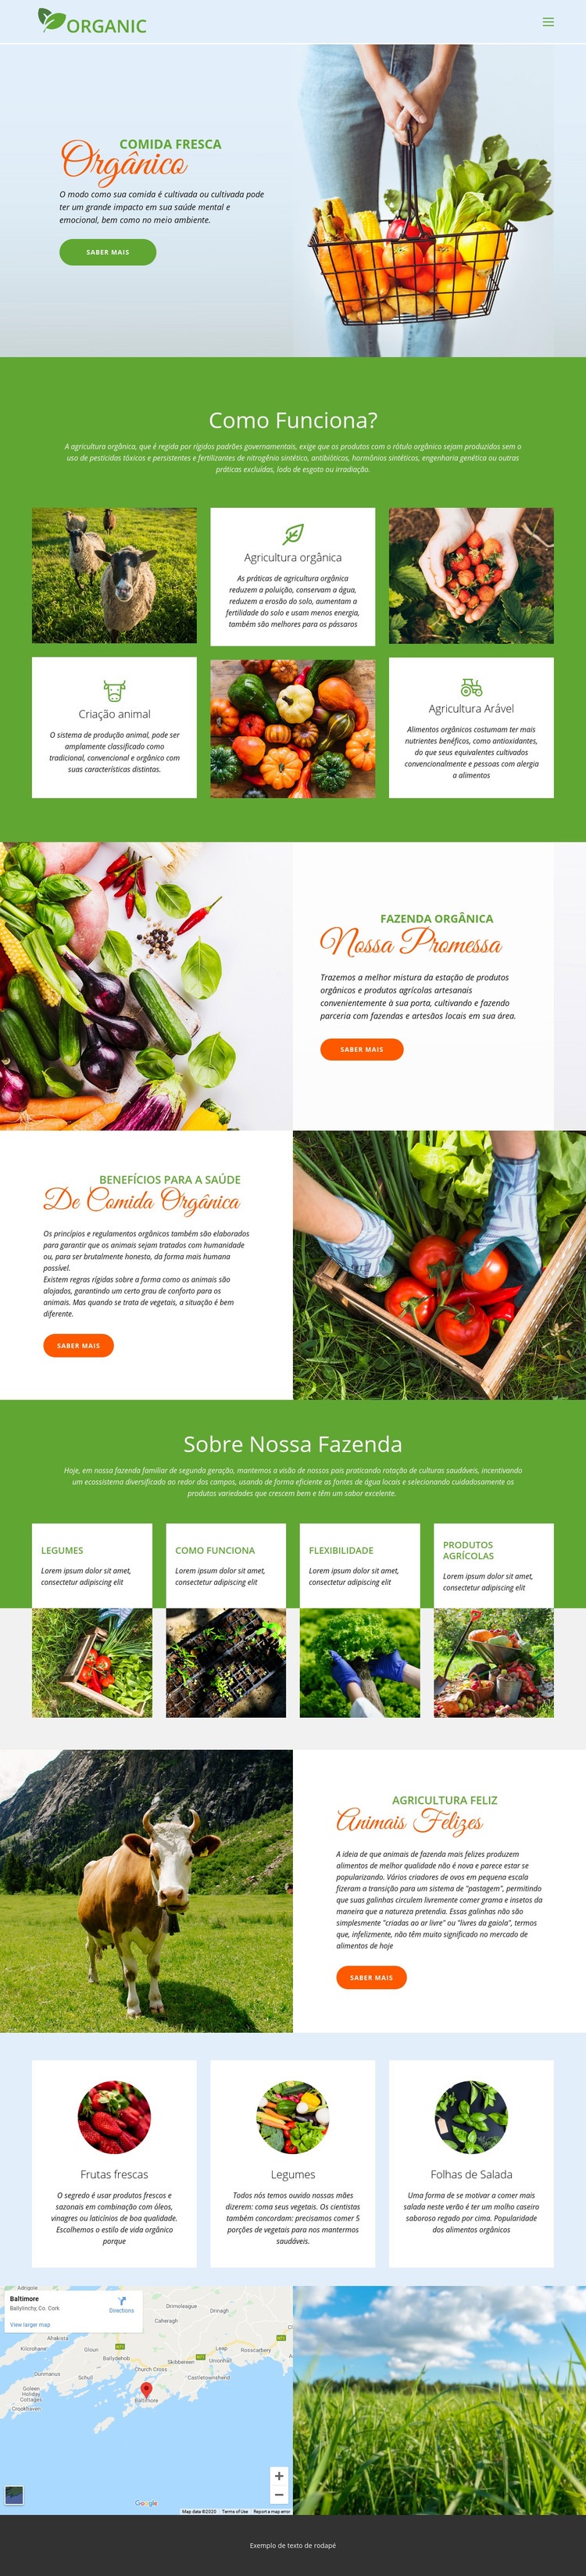 Coma a melhor comida orgânica Modelo HTML5